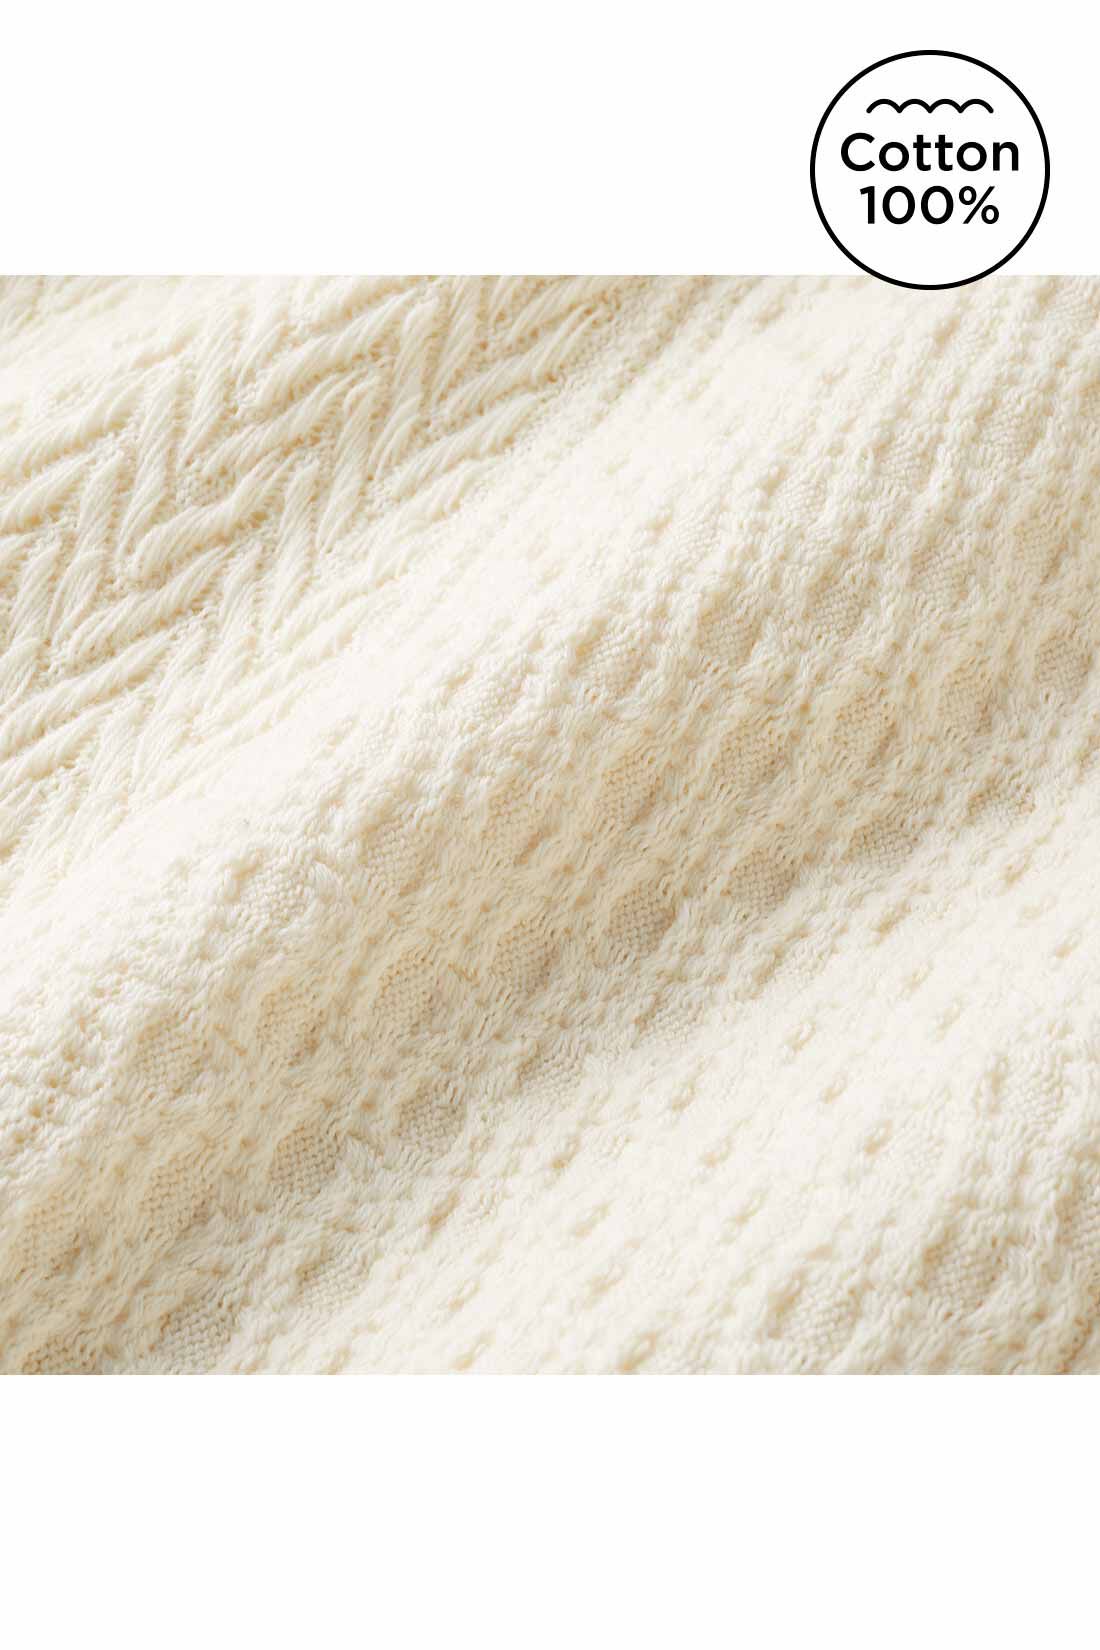 Real Stock|Live love cottonプロジェクト　リブ イン コンフォート　編み柄が素敵なオーガニックコットンロングスカート〈ブラック〉|ニット見えするジャカード編みの、薄くてやわらかいカットソー素材。　※お届けするカラーとは異なります。